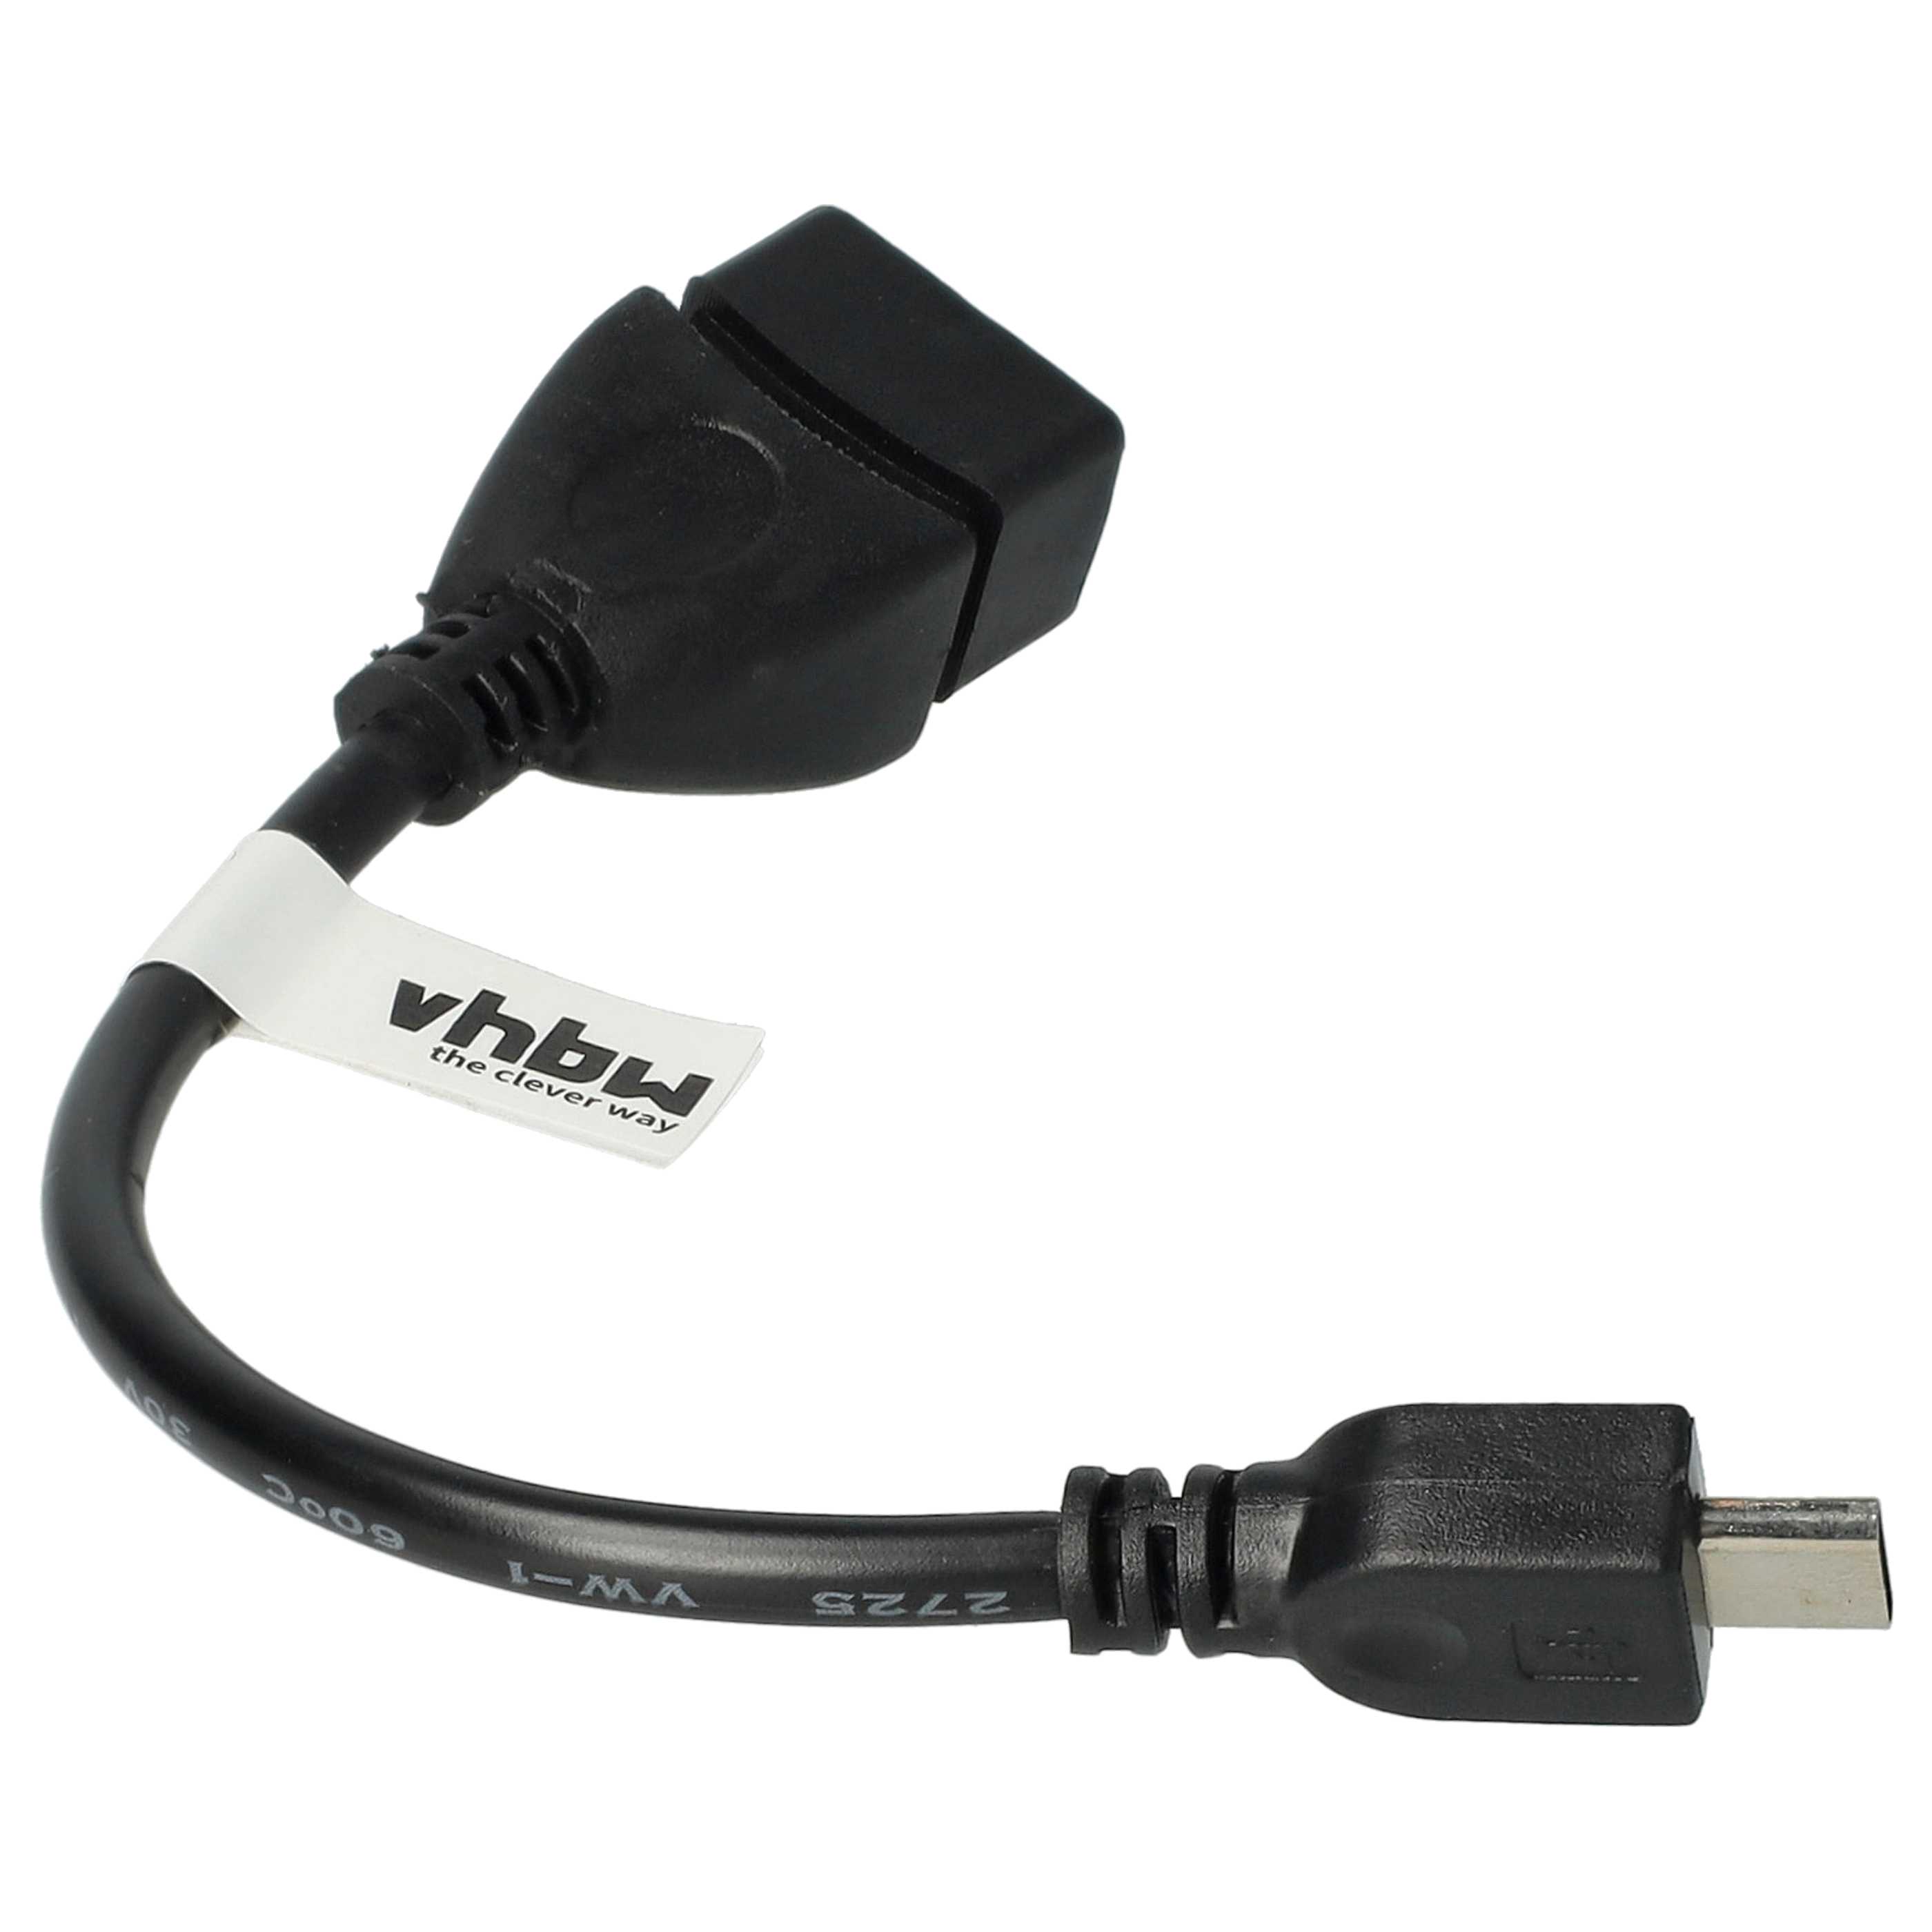 Adaptador OTG Micro-USB a USB (hembra) para smartphones, tablets, computadora 